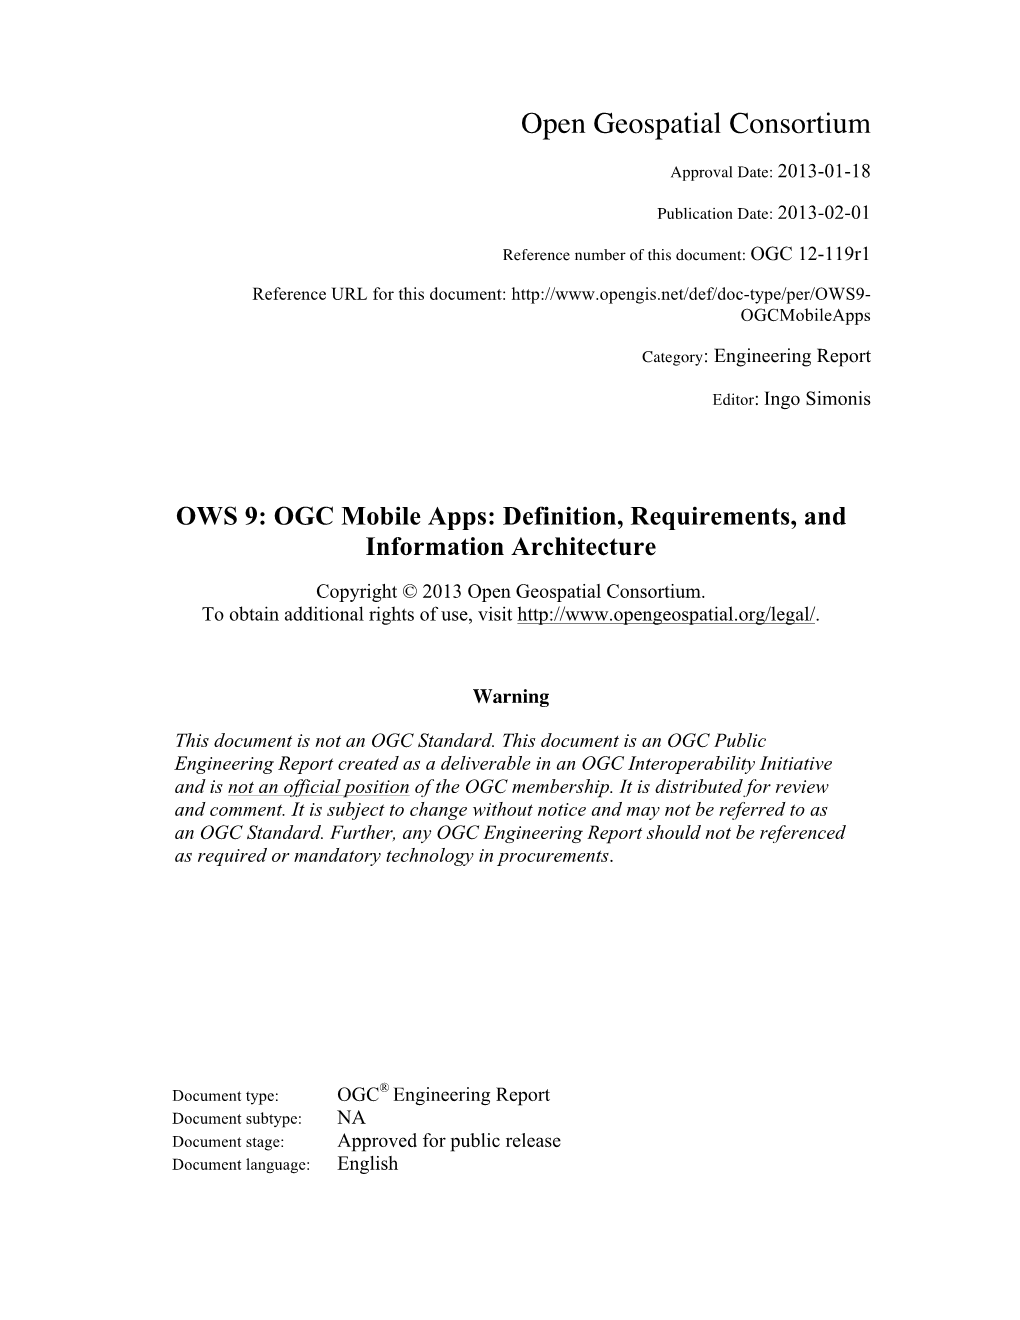 OWS-9: OGC Mobile Apps